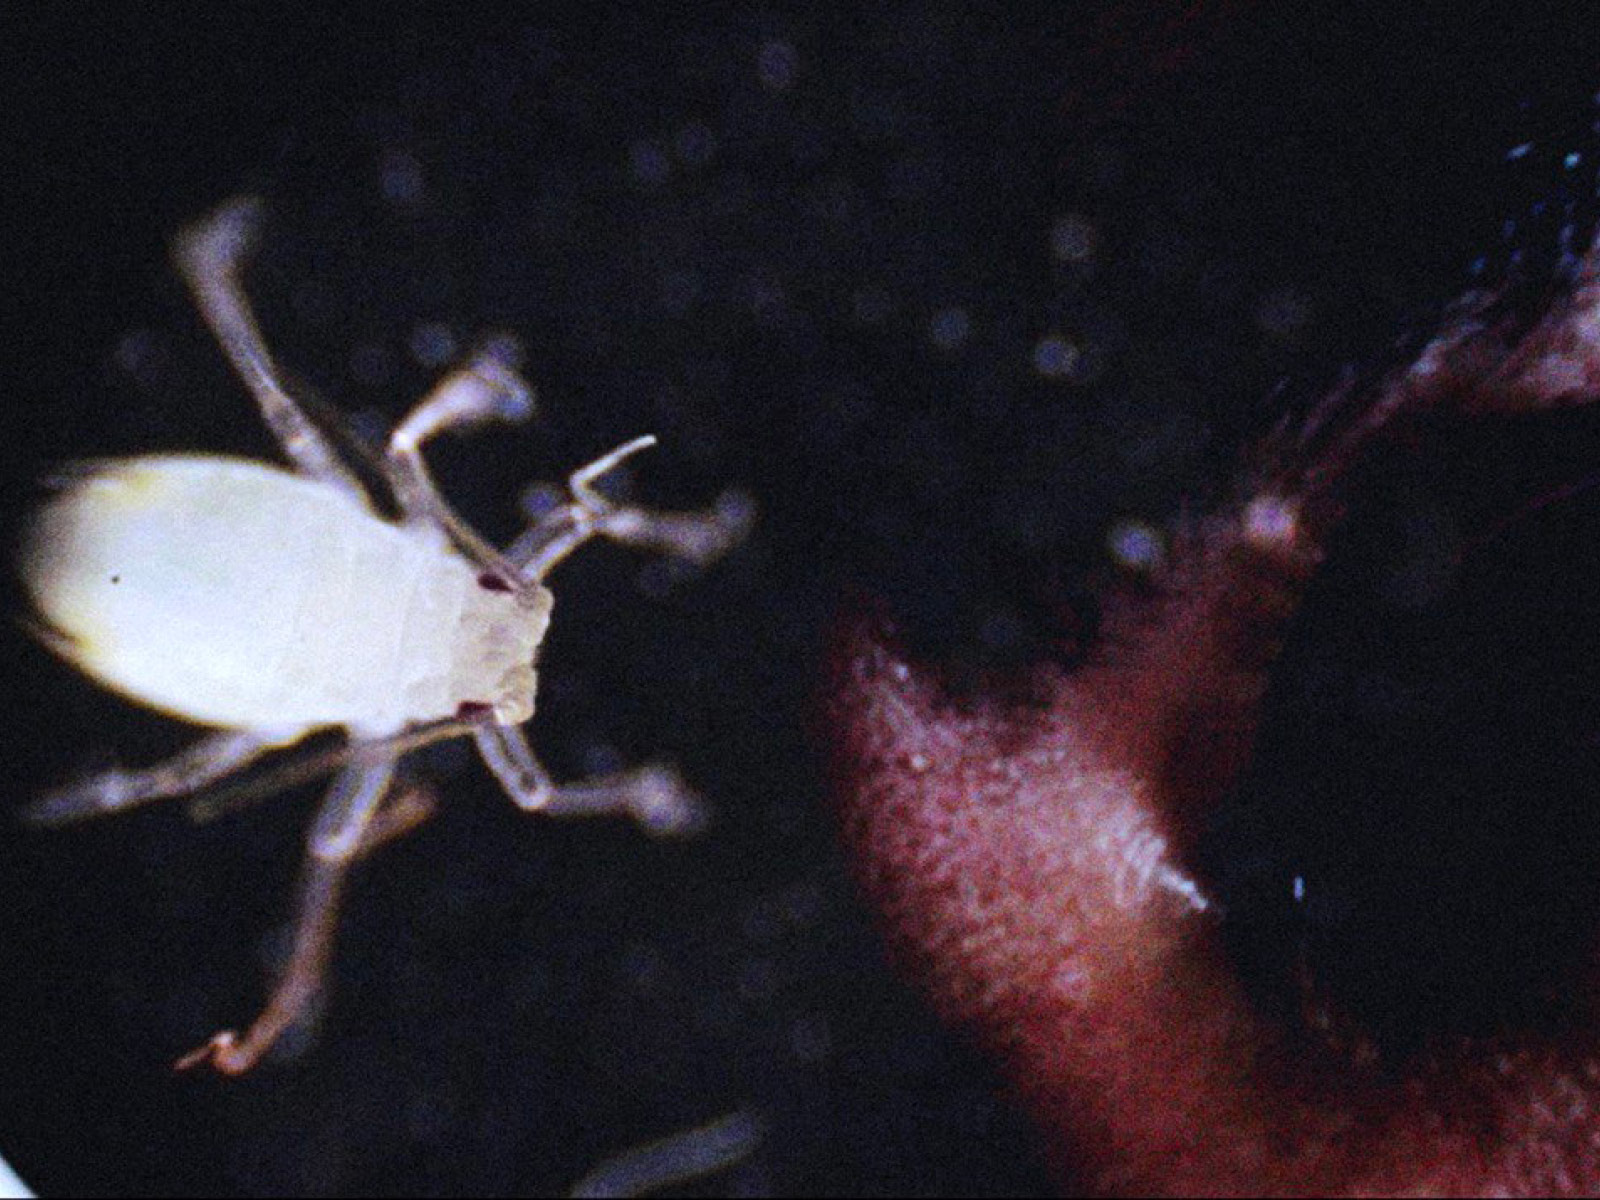 Ein schreckensweit geöffnetes Augenpaar blickt auf ein weißes, stark vergrößertes Insekt mit sechs Beinen und anliegenden Fühlern.